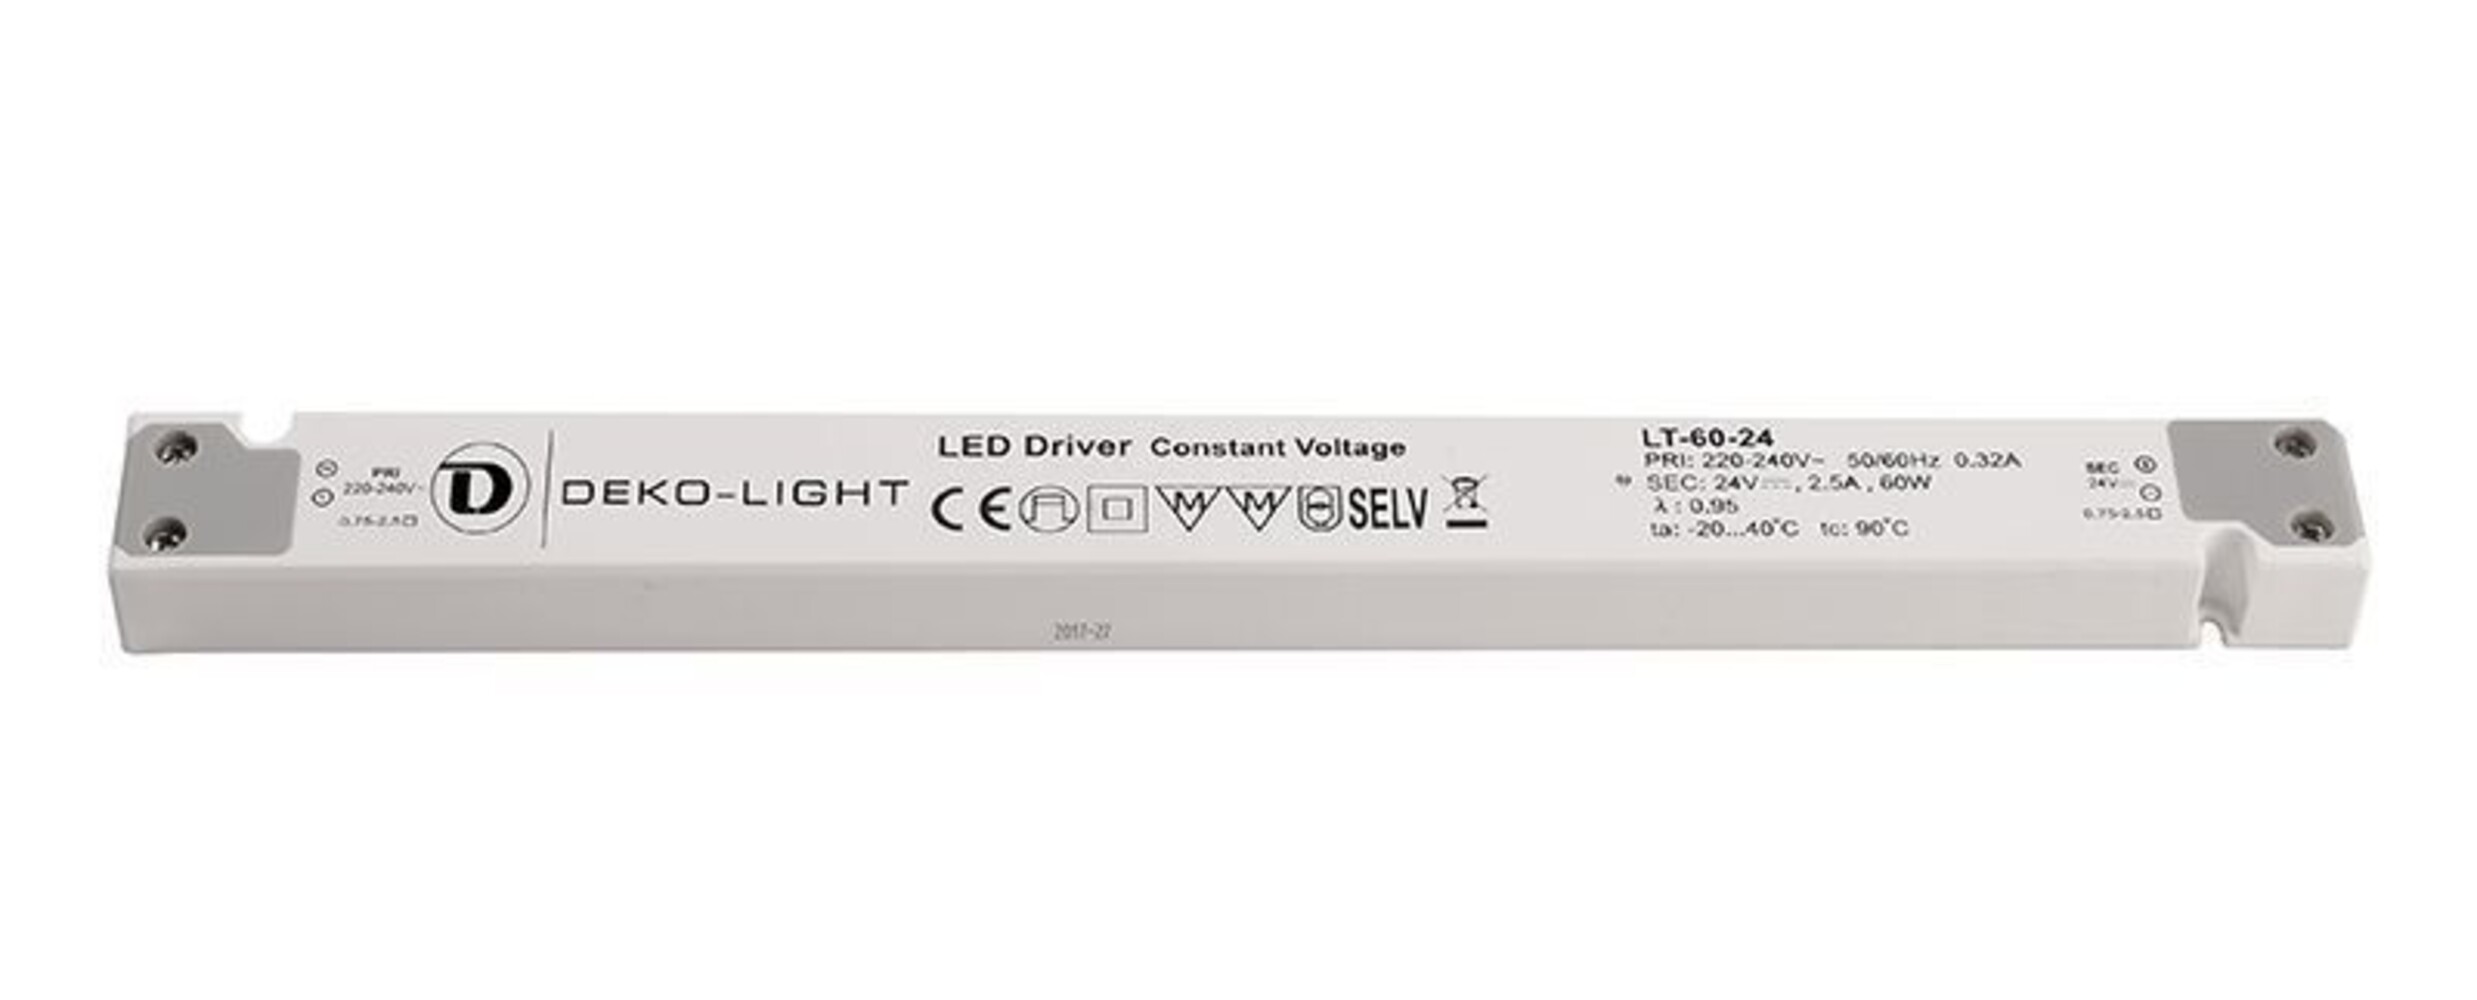 Hochwertiges LED Netzteil von Deko-Light mit konstanter Spannung